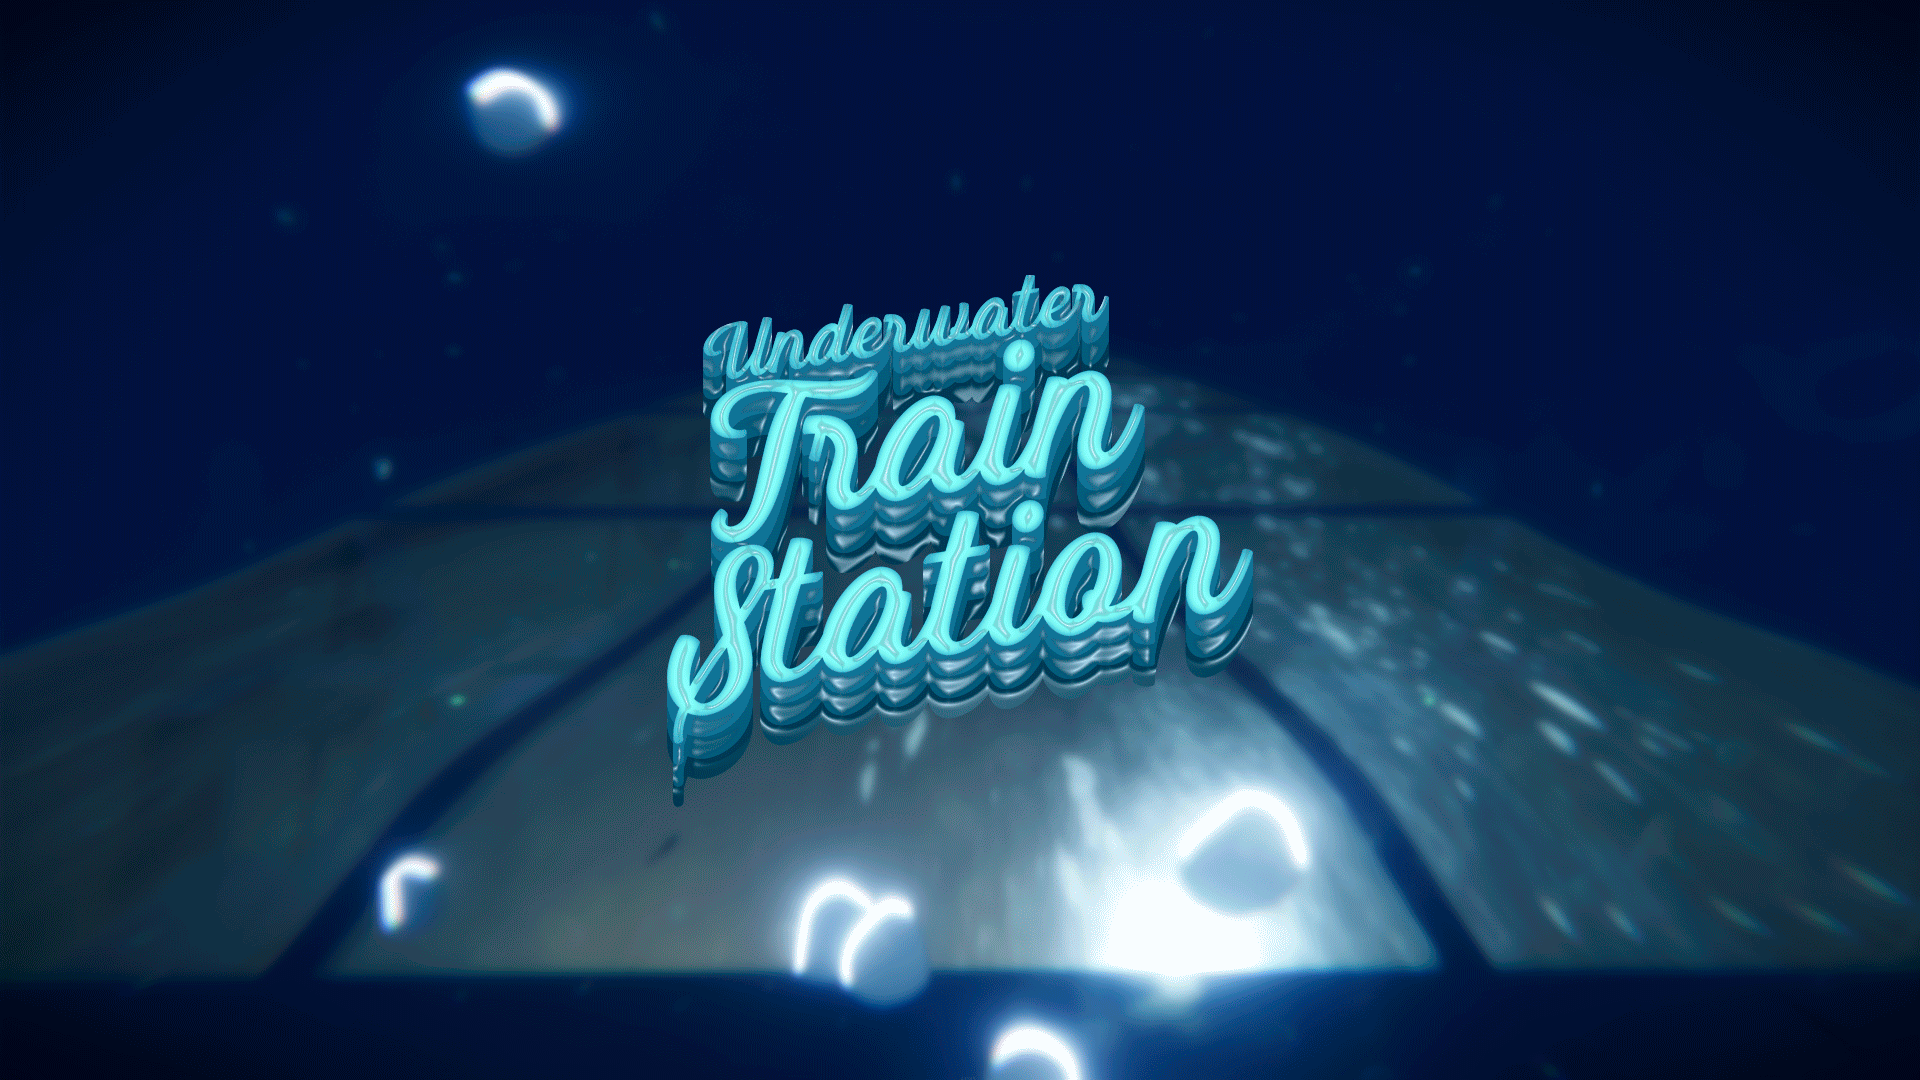 Underwater Train Station